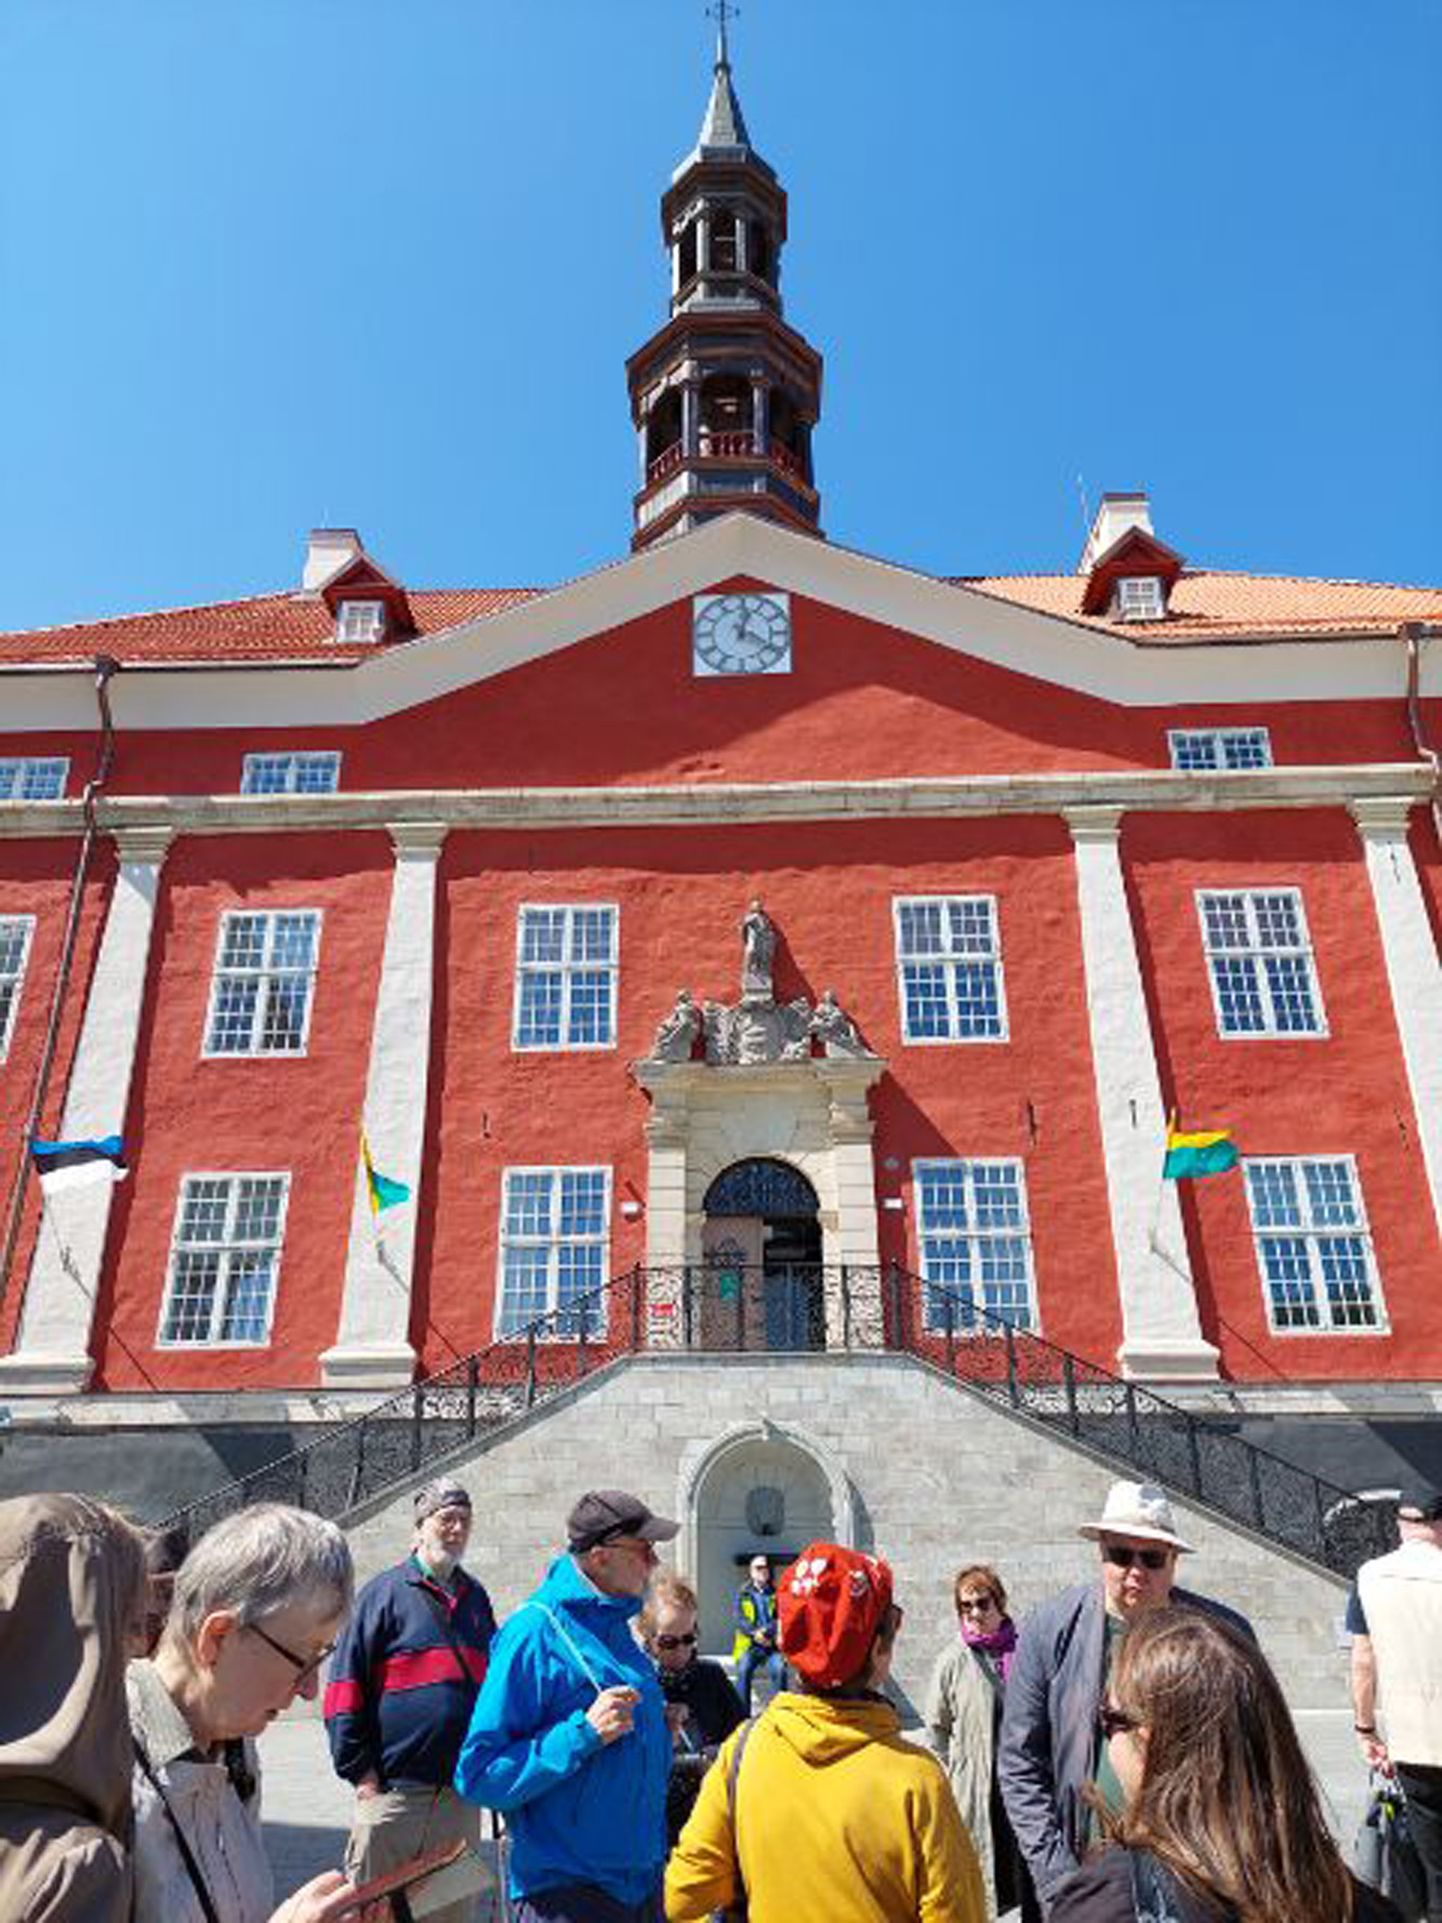 Финское Общество Тугласа на шесть дней привезло пятьдесят интересующихся культурой финнов в Нарву, где большой интерес вызвала и недавно отремонтированная ратуша.